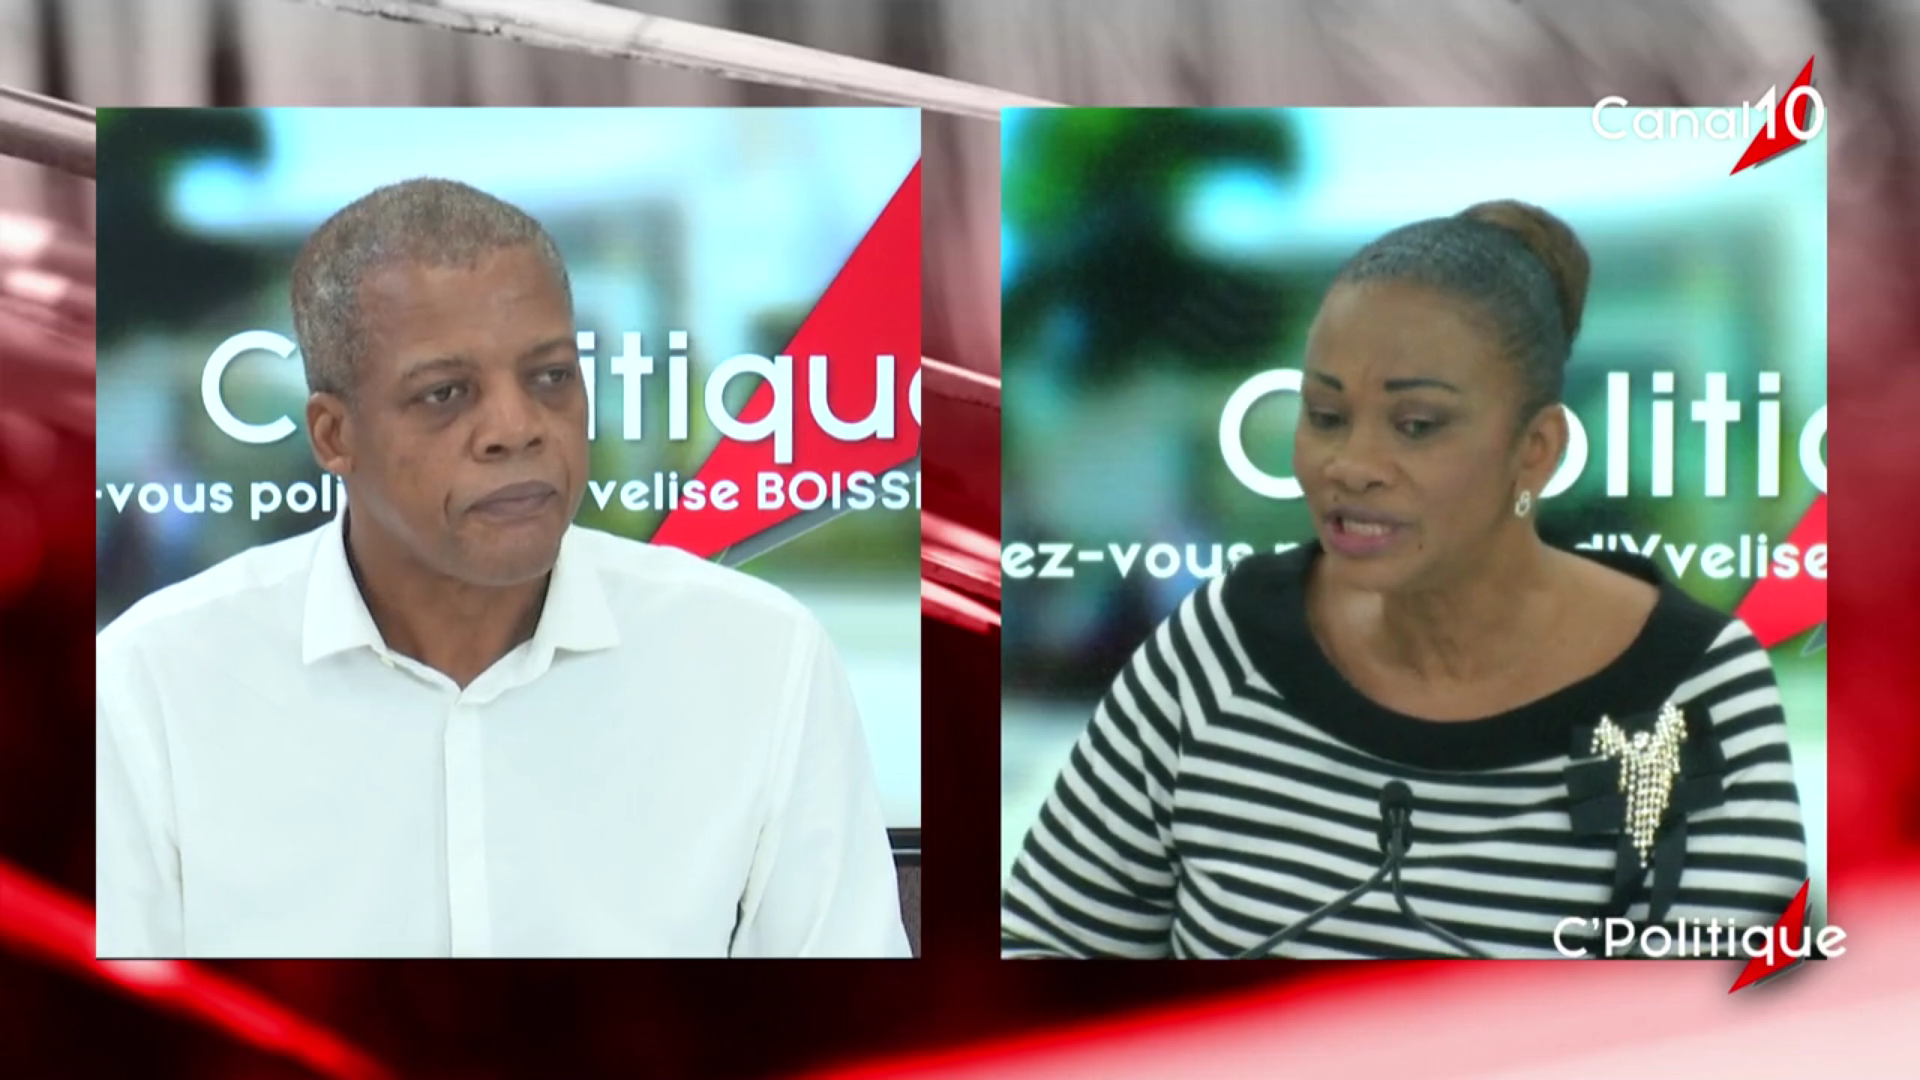 [Vidéo] Onews Guadeloupe. Ferdy LOISY Maire de Goyave invité de C’ Politique avec Yvelise BOISSET